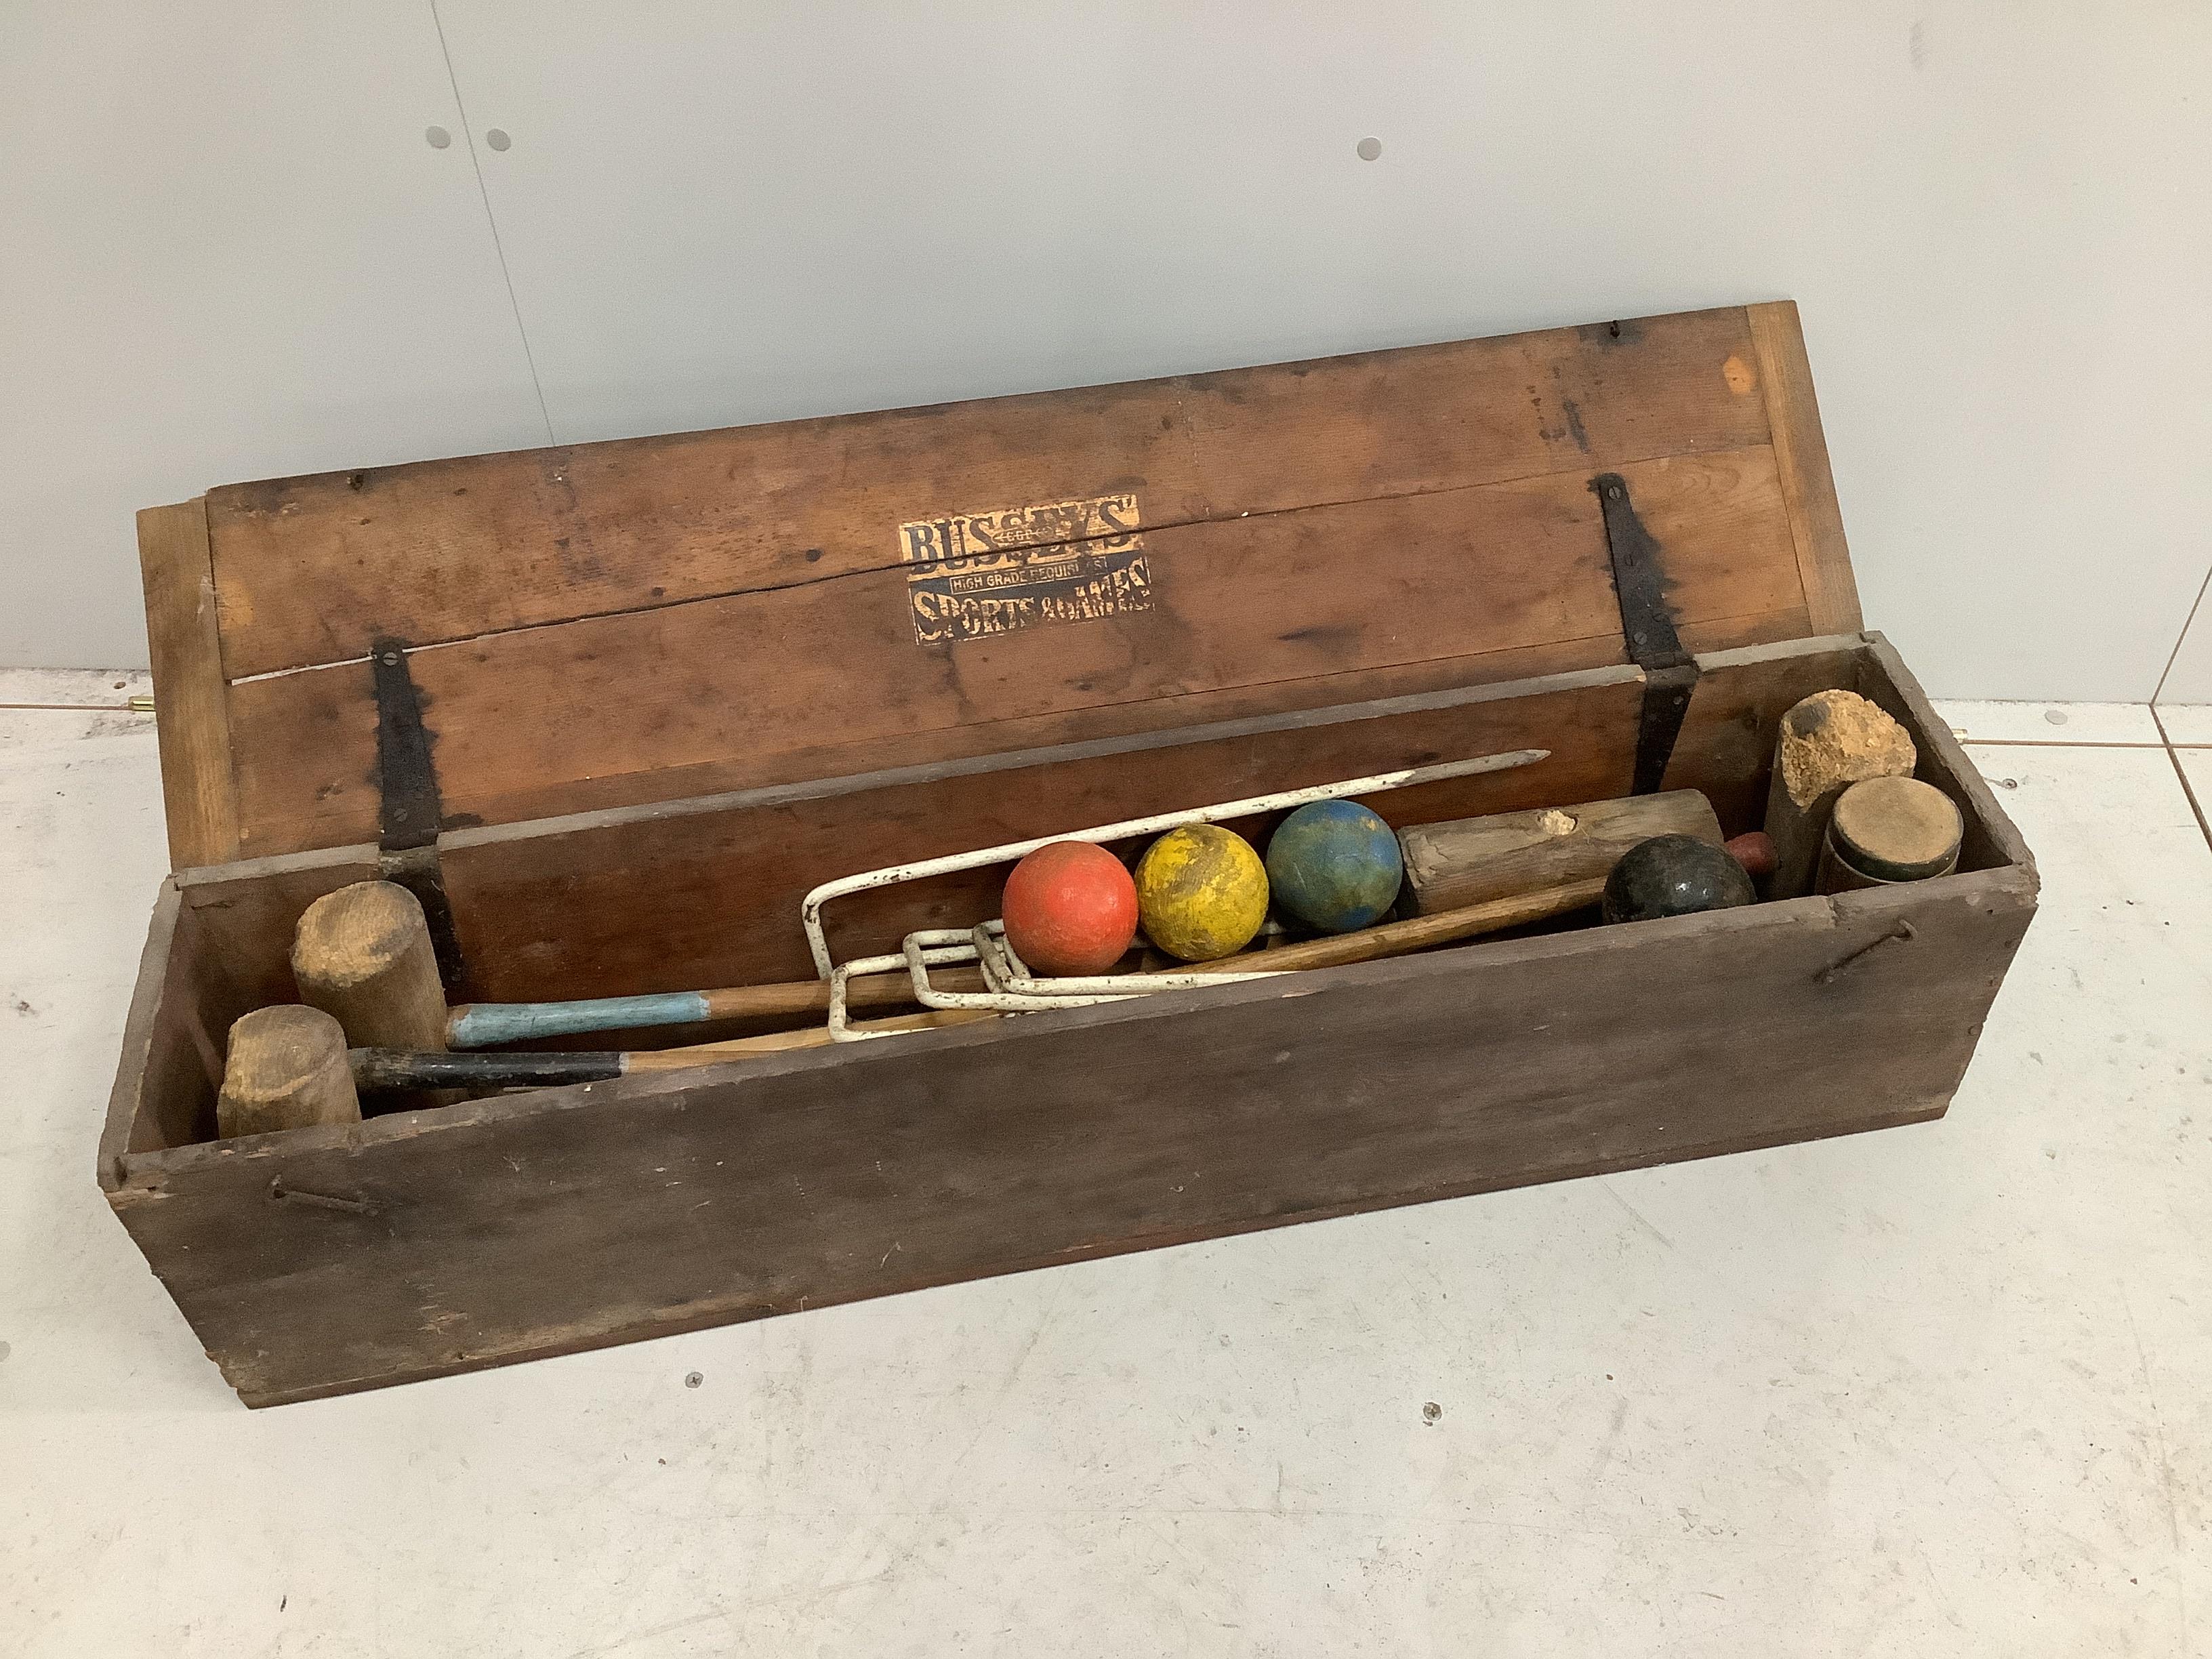 A vintage Busseys croquet set, boxed                                                                                                                                                                                        